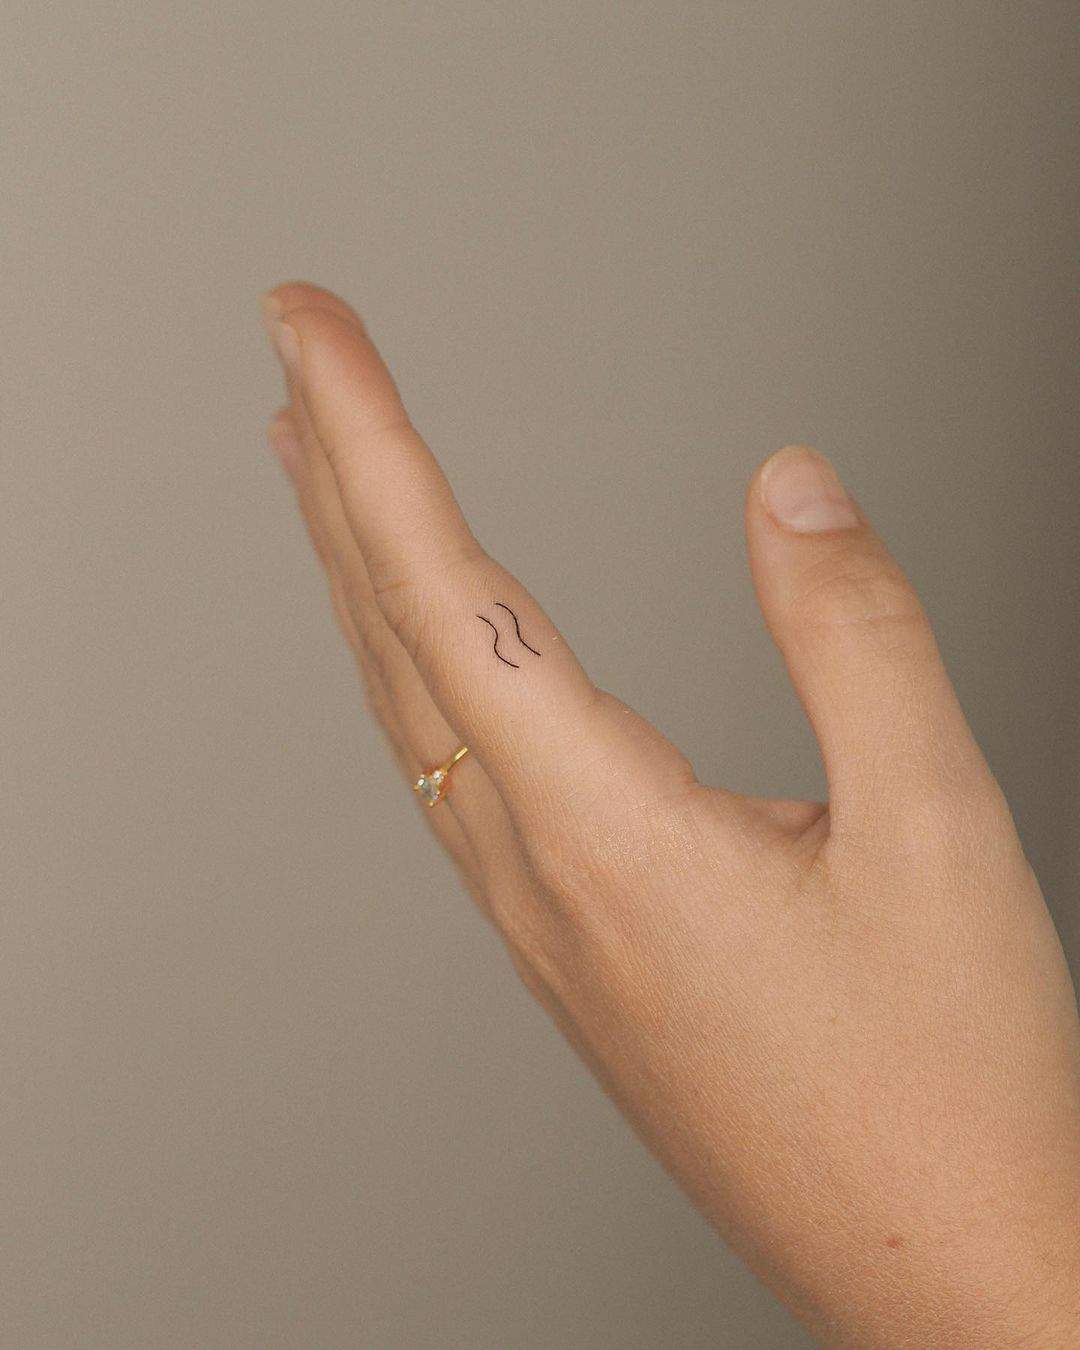 La representación de acuario en forma de tattoo minimalista